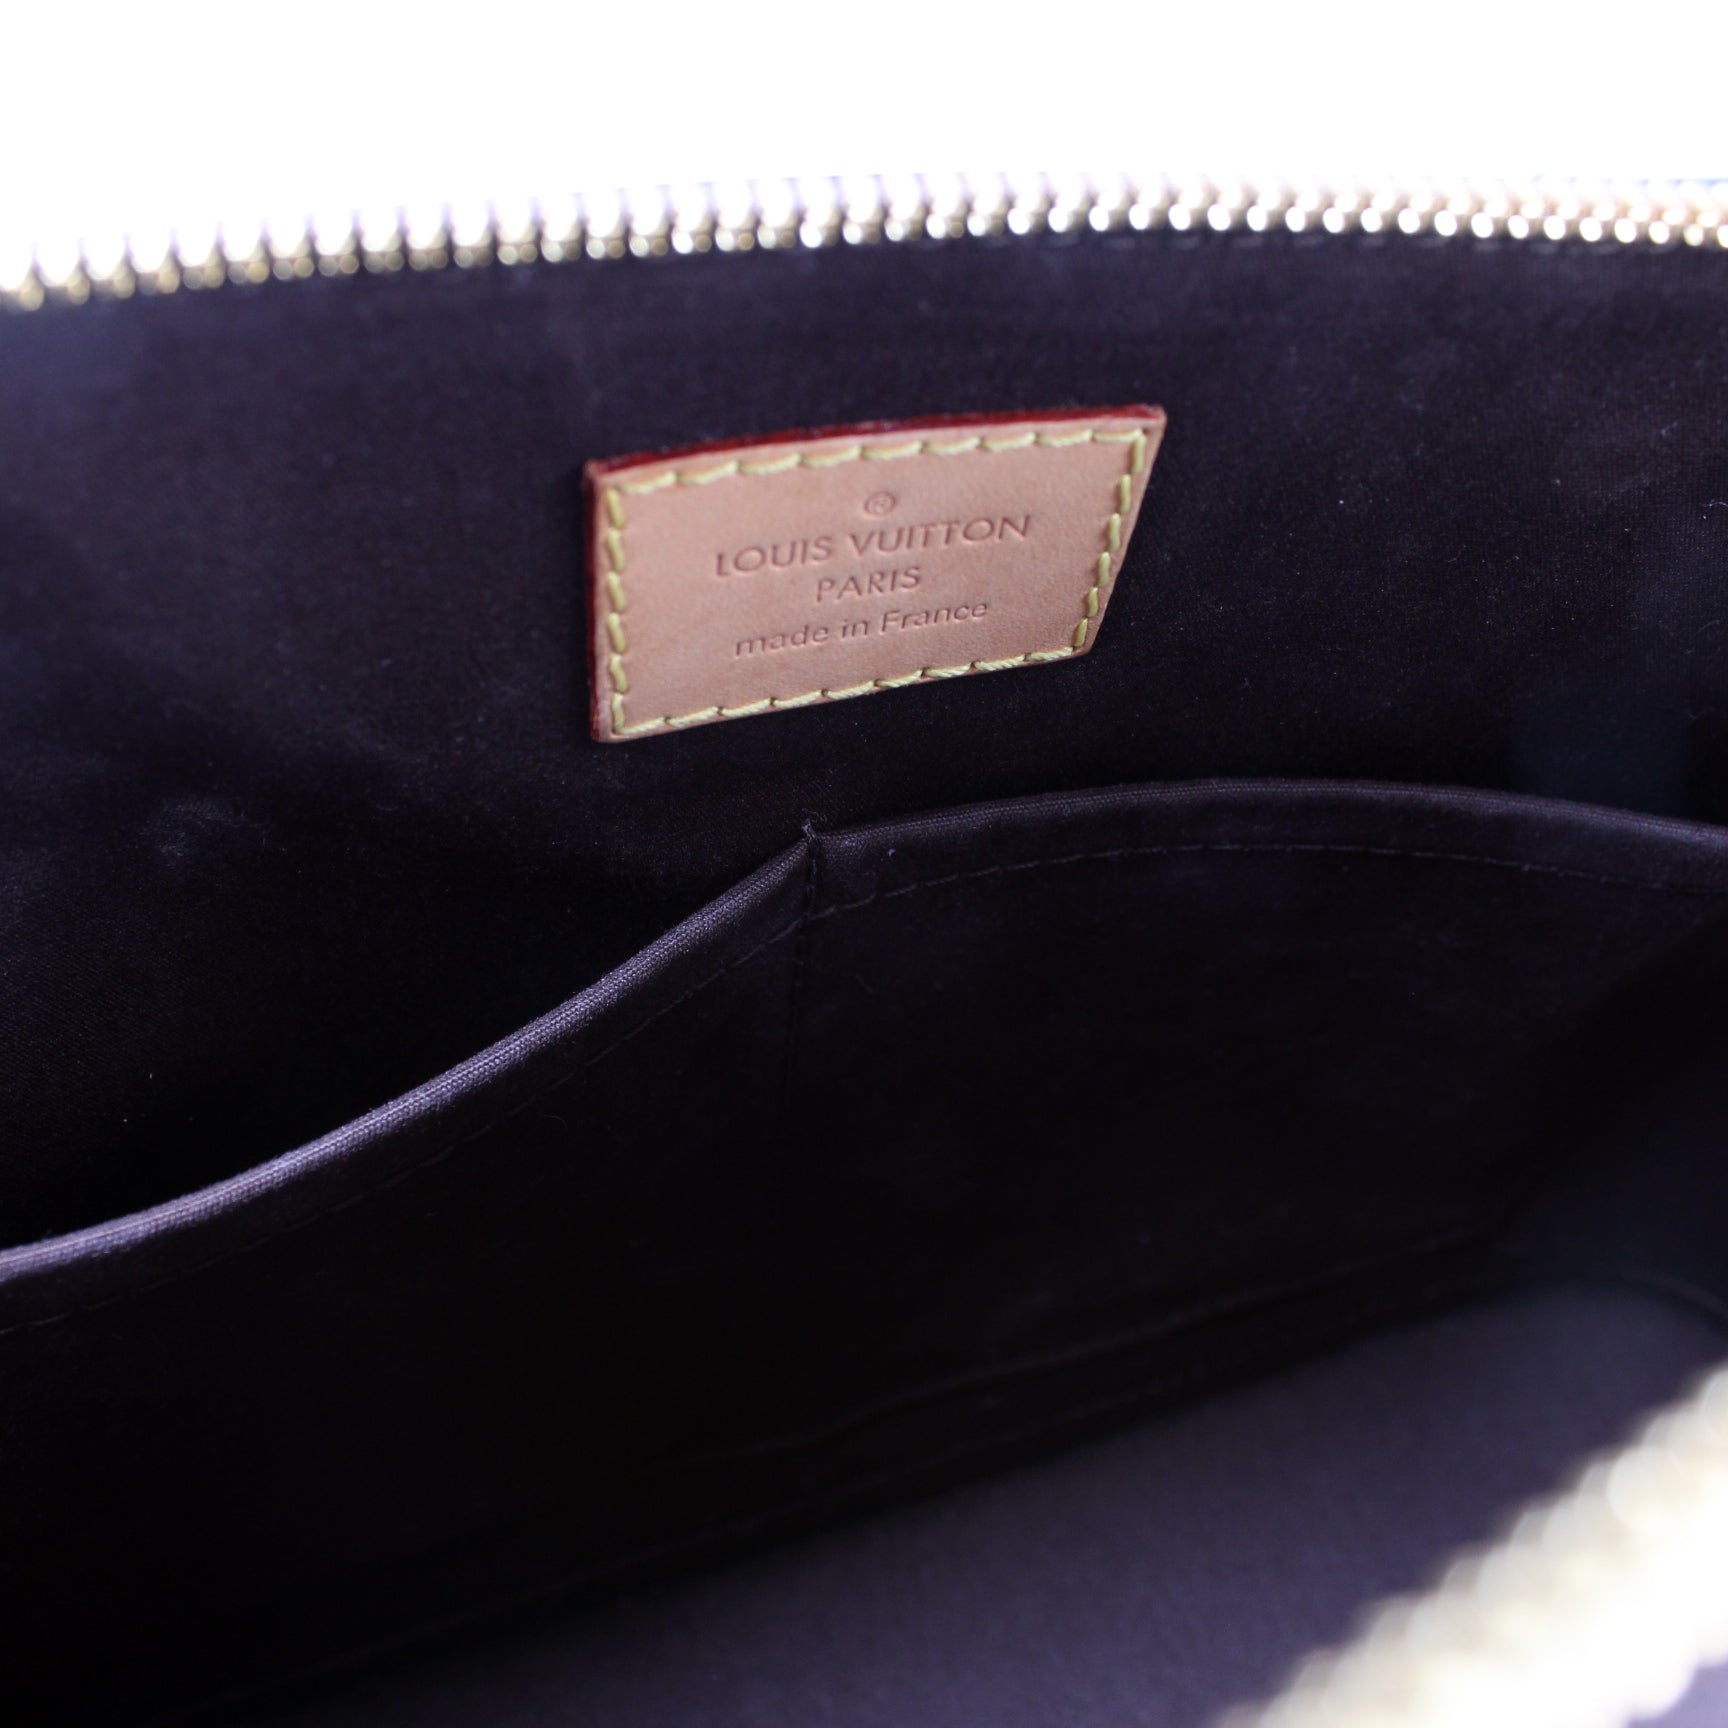 Louis Vuitton Vernis Alma MM Cream Bag - ADL1233 – LuxuryPromise